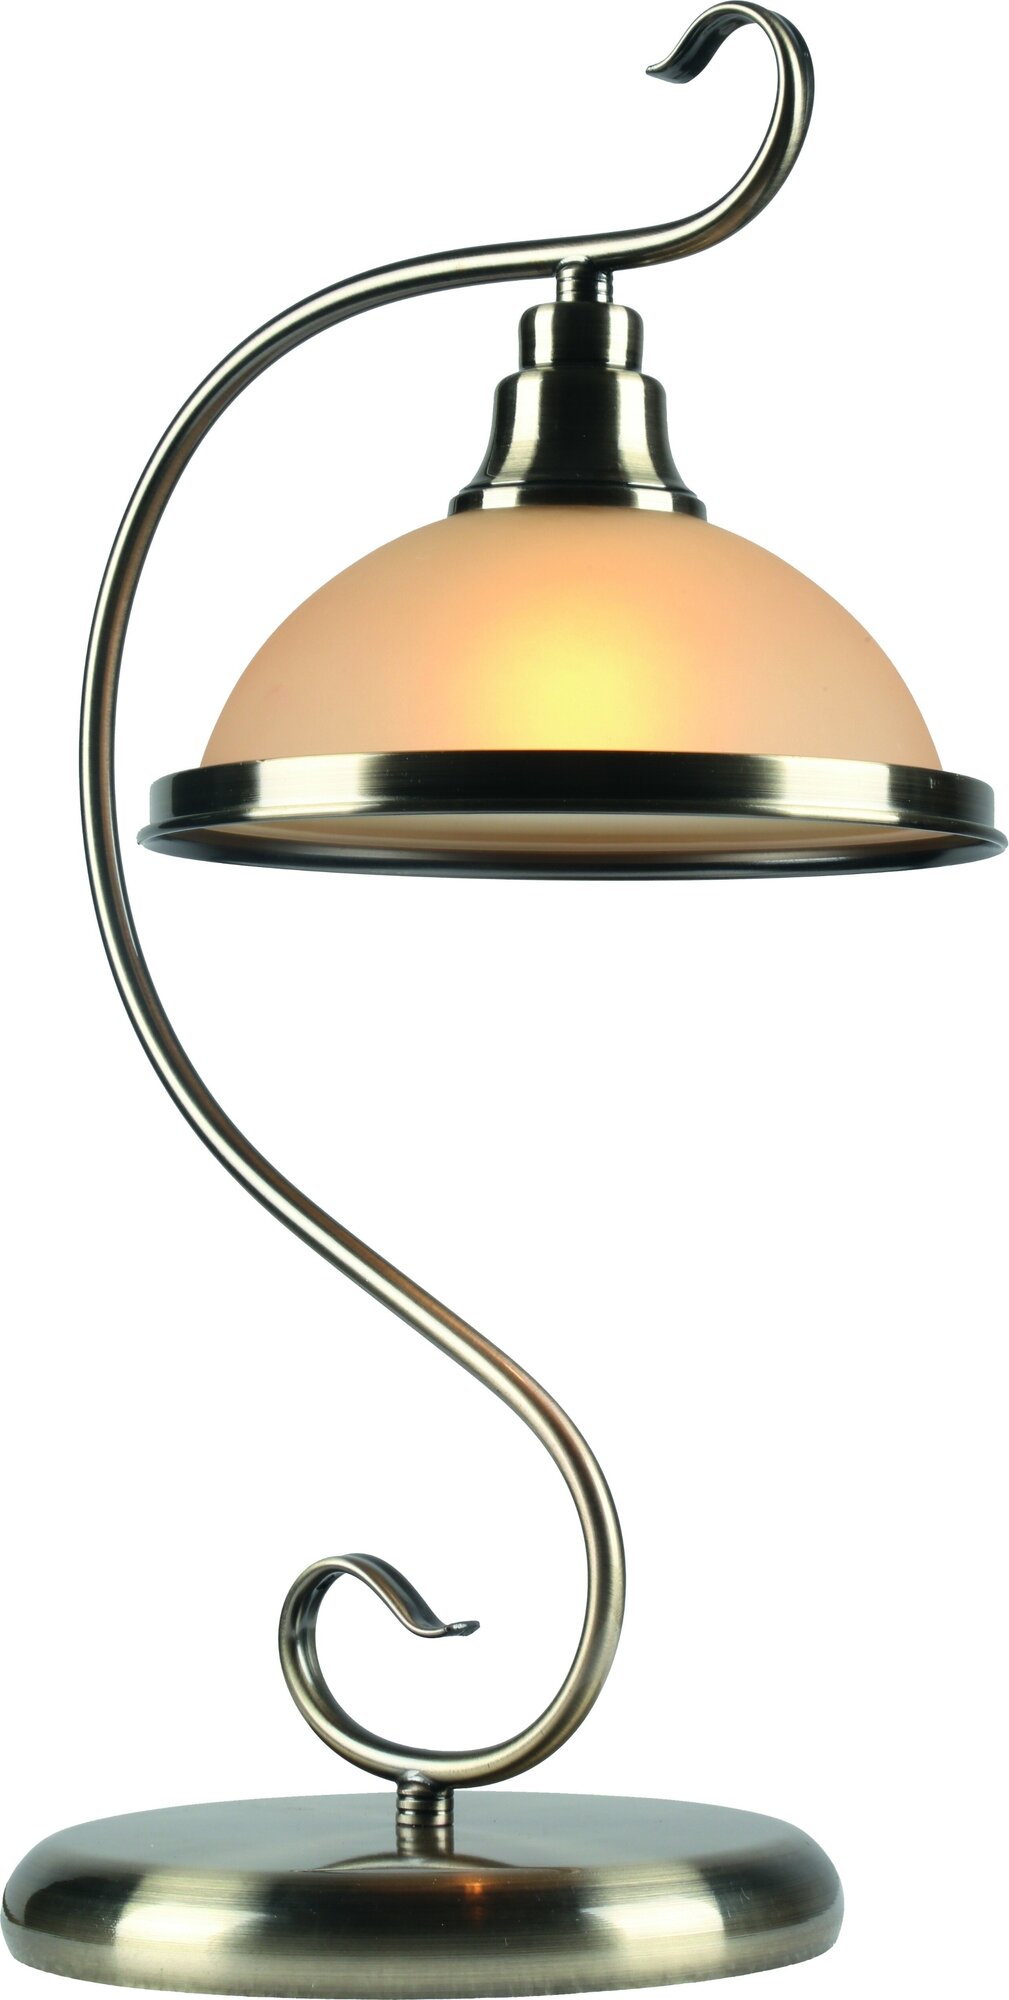 Настольная лампа Arte Lamp A6905LT-1AB, E27, кол-во ламп:1шт, Бронза